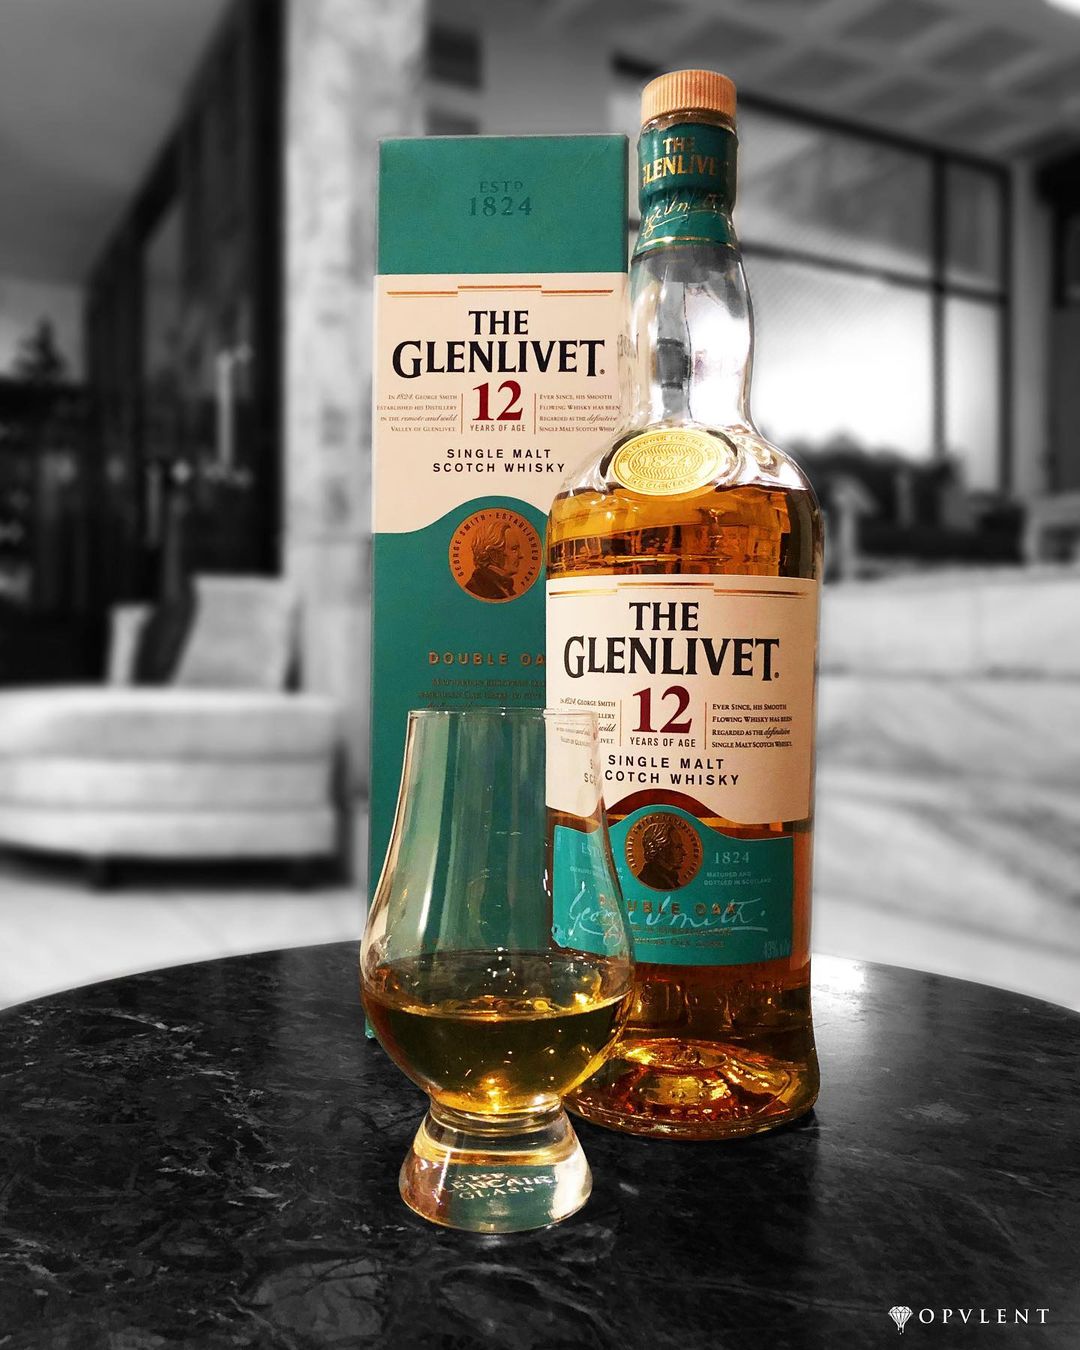 The Glenlivet 12 Single Malt Scotch Whisky